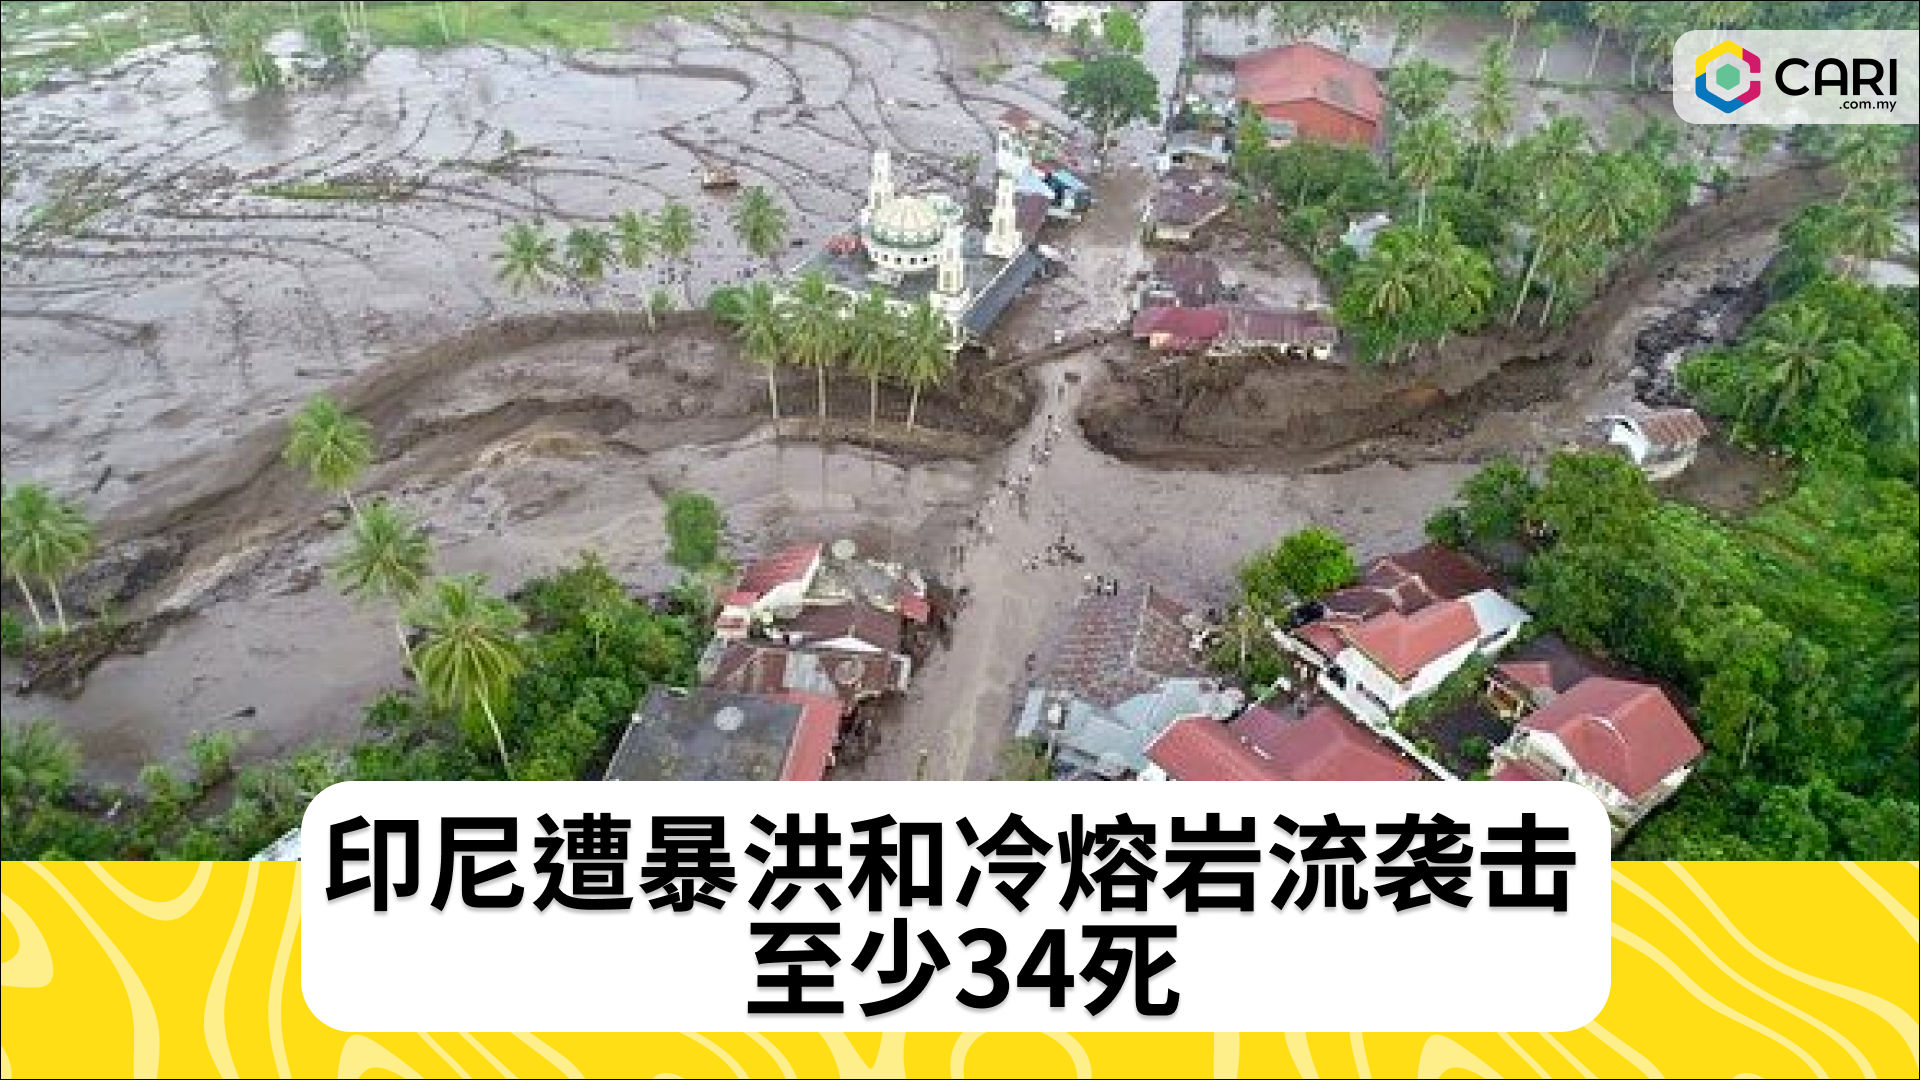 印尼遭暴洪和冷熔岩流袭击 至少34死